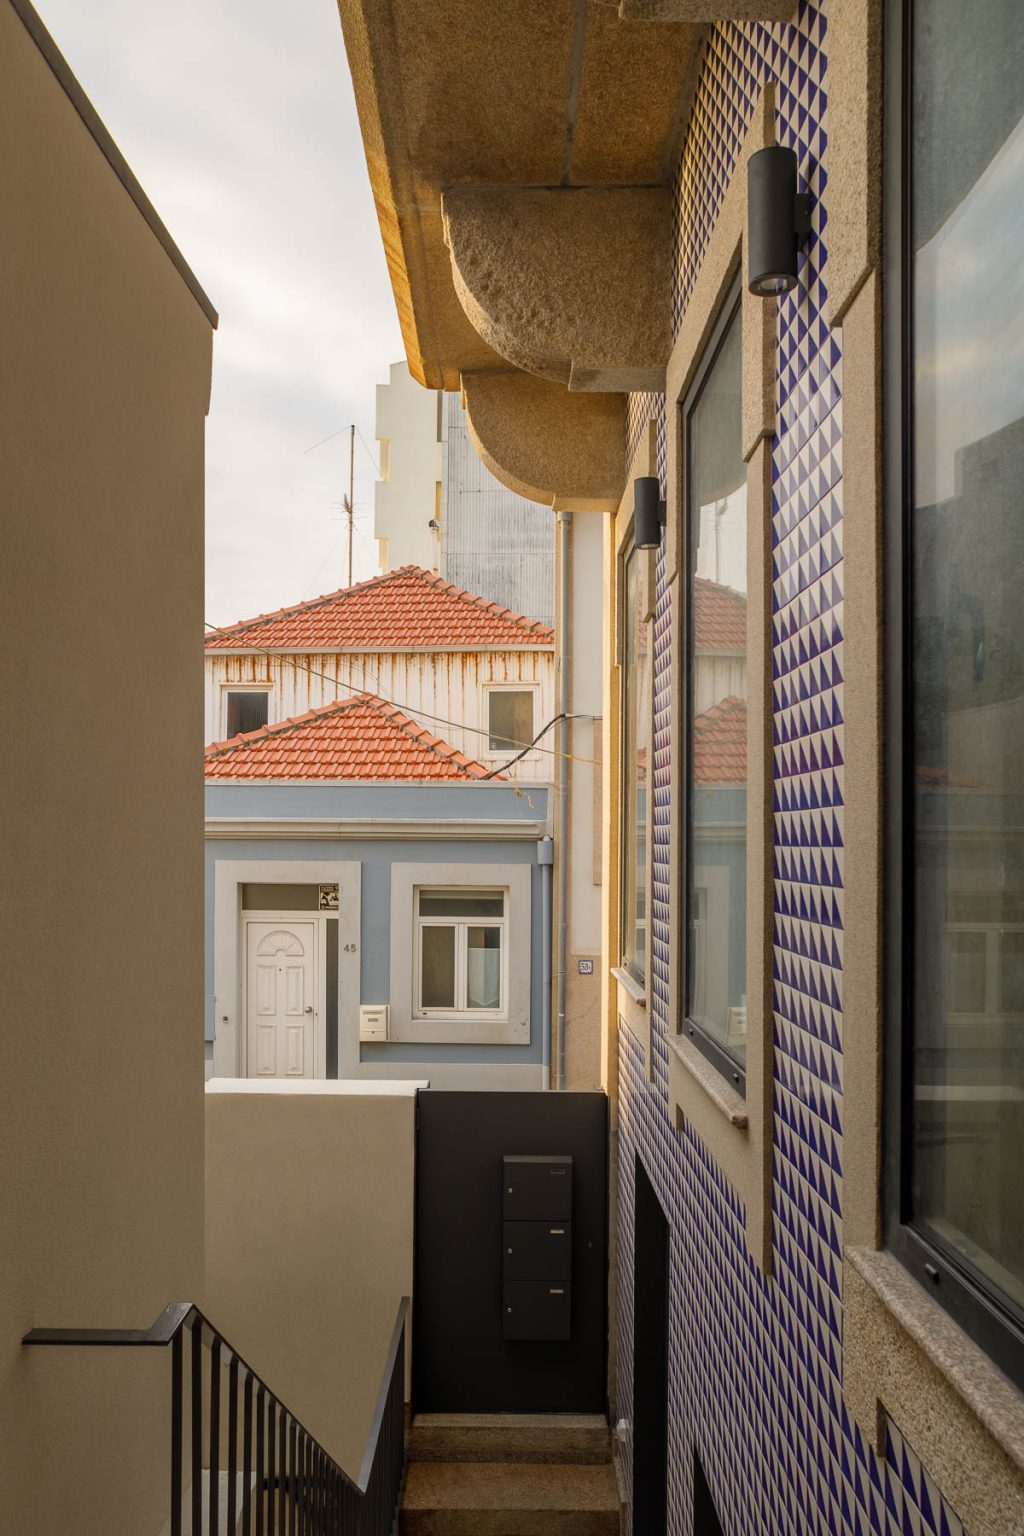 Prédio Foz a Porto - As Arquitecto